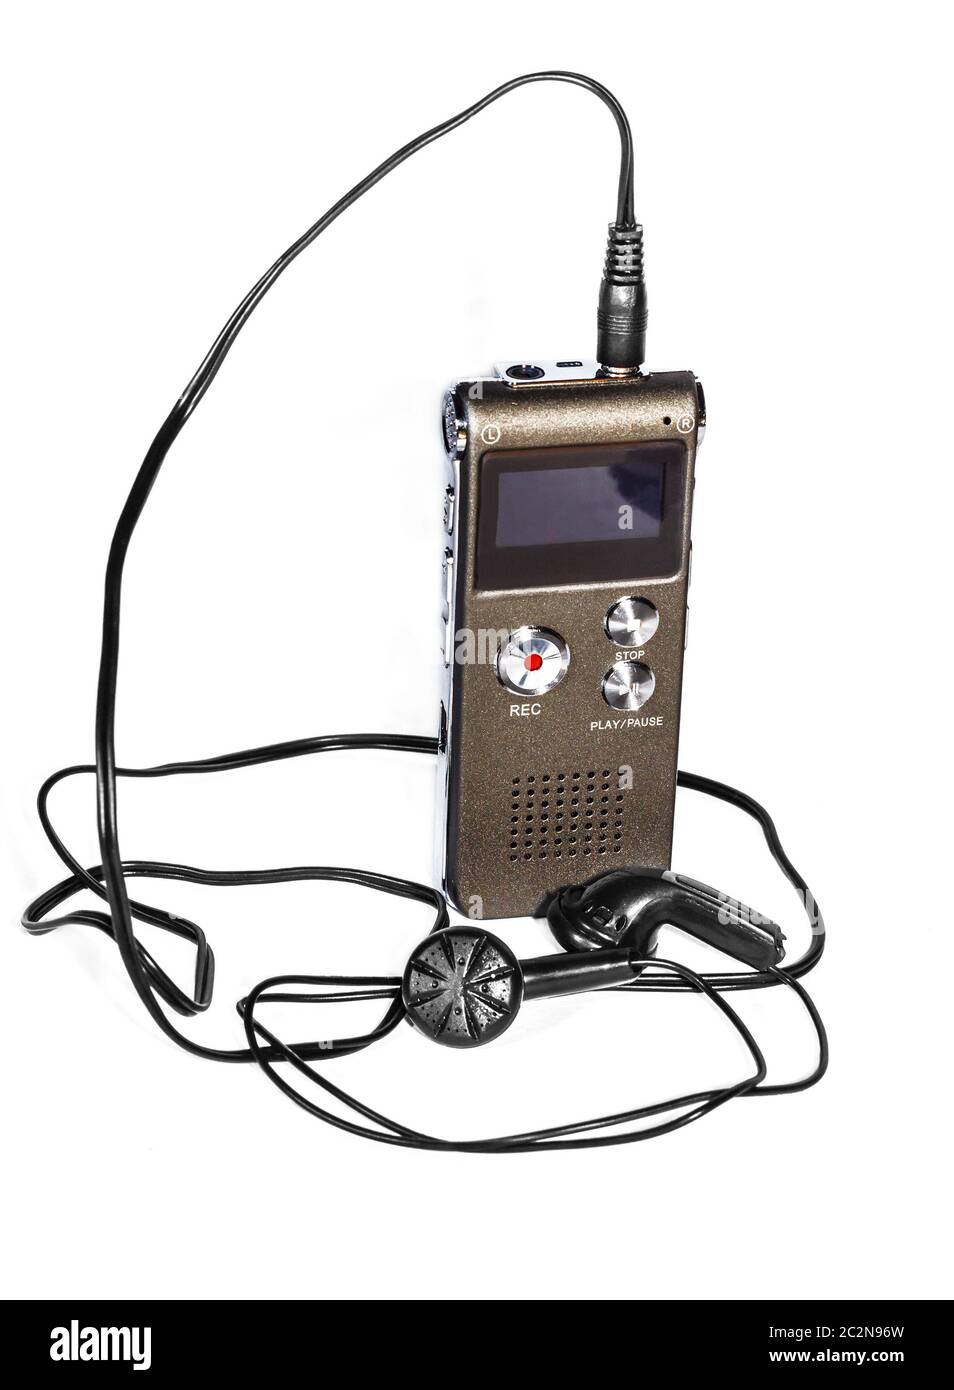 Voice recorder with headphones Stock Photo